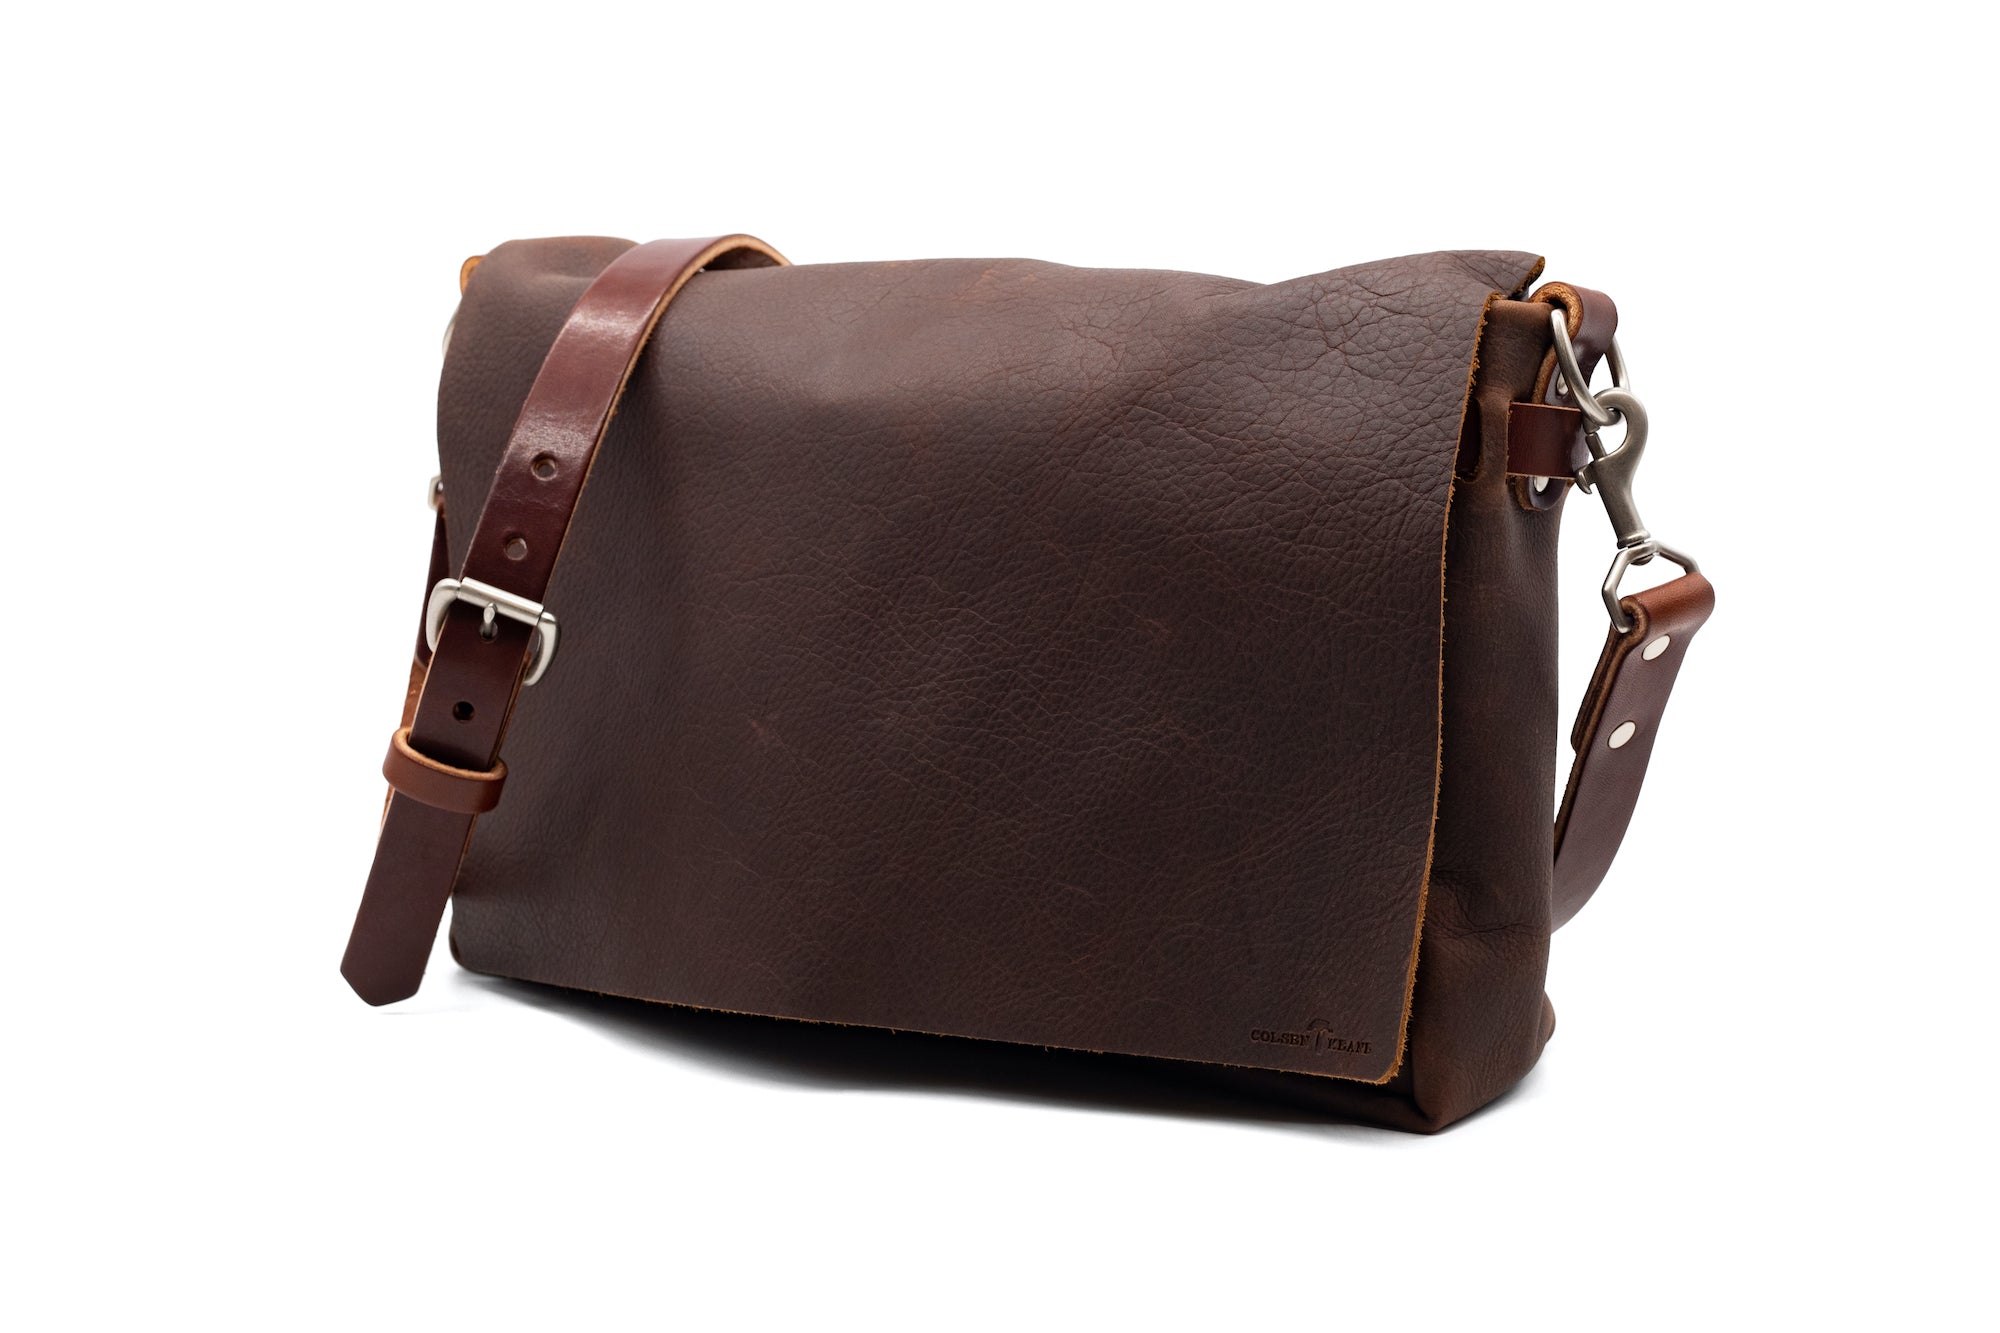 Full Grain Leather Tote Bags | ColsenKeane Leather | colsenkeane.com ...